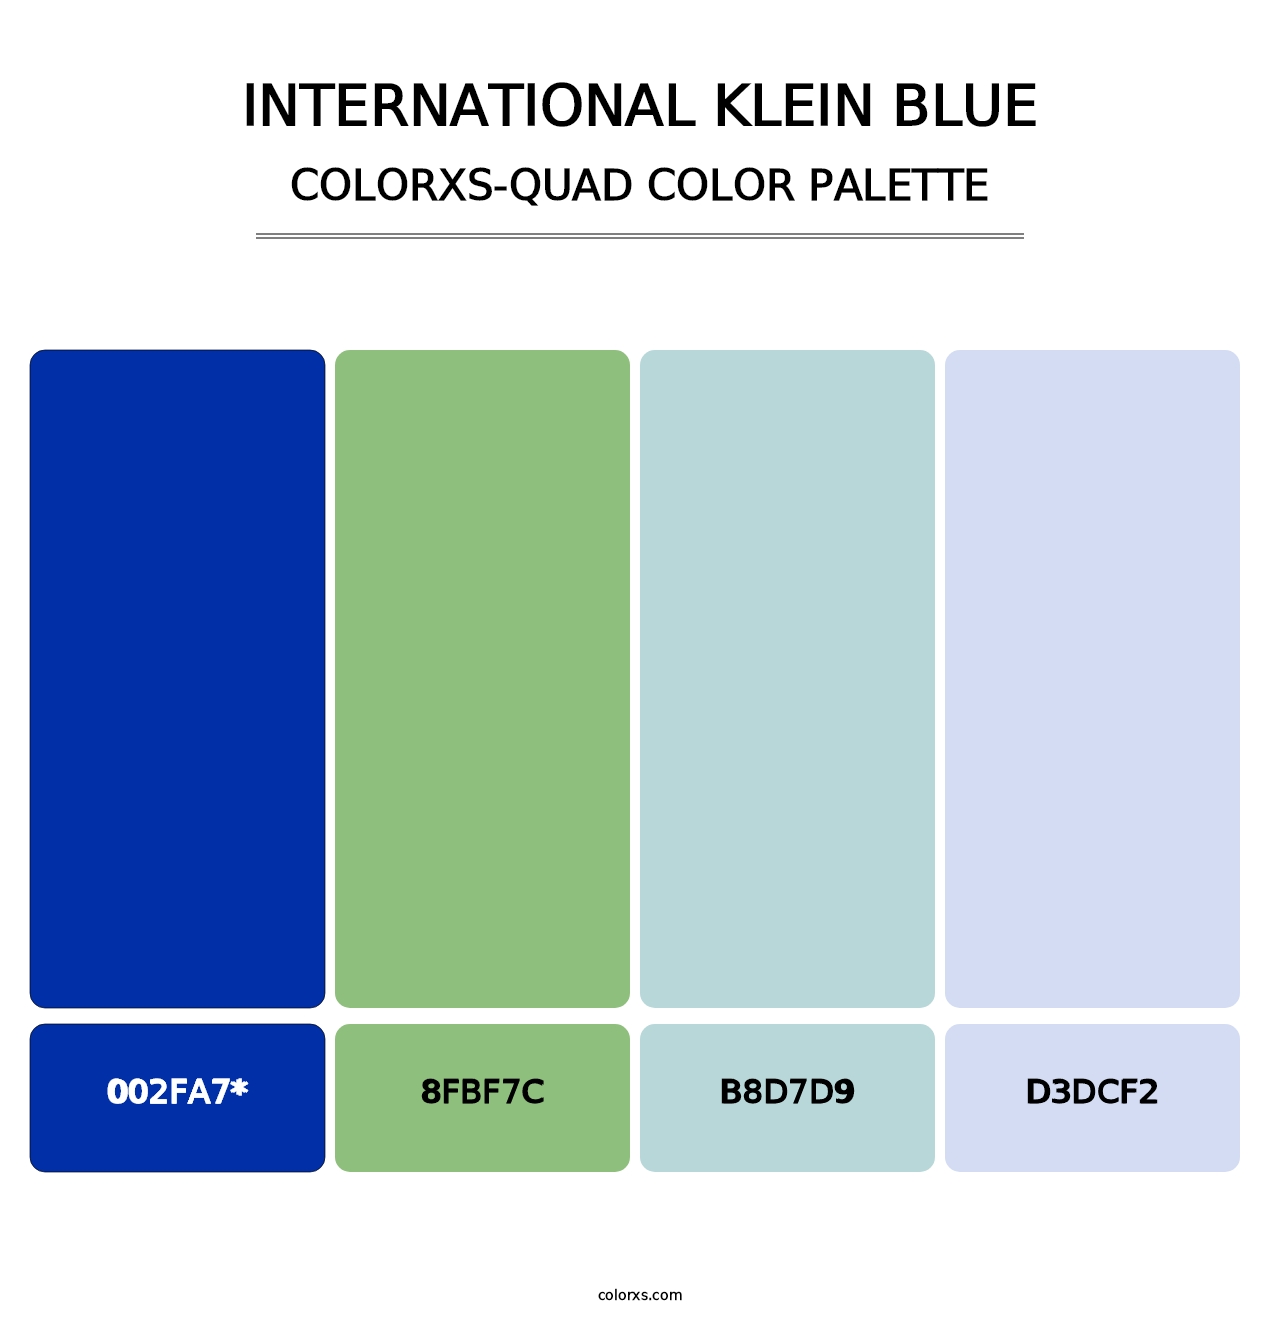 International Klein Blue - Colorxs Quad Palette